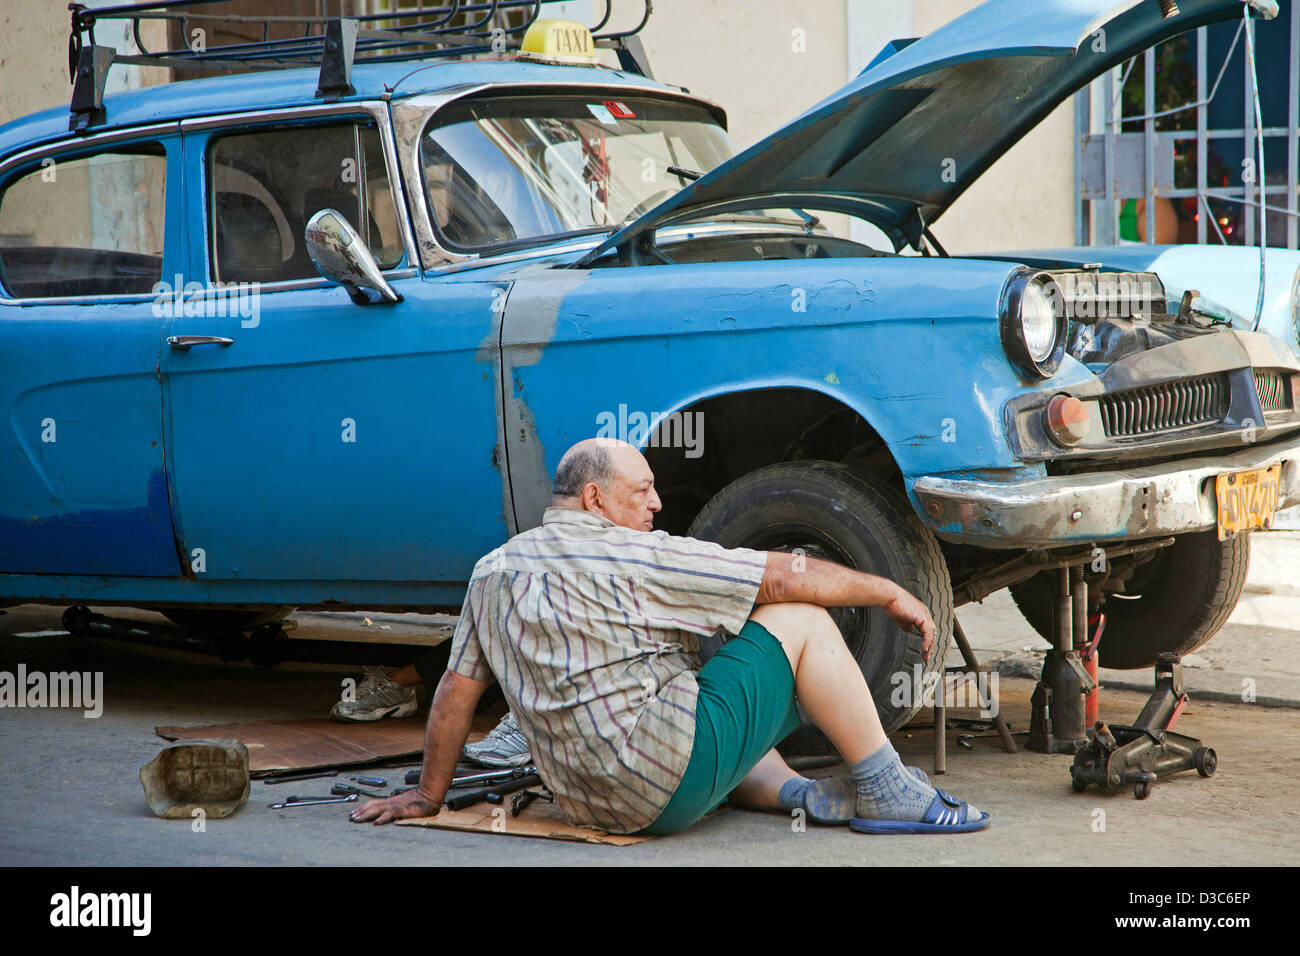 Cuban car mechanic repairing 1950s vintage American car / Yank tank / taxi on street in Havana, Cuba, Caribbean Stock Photo